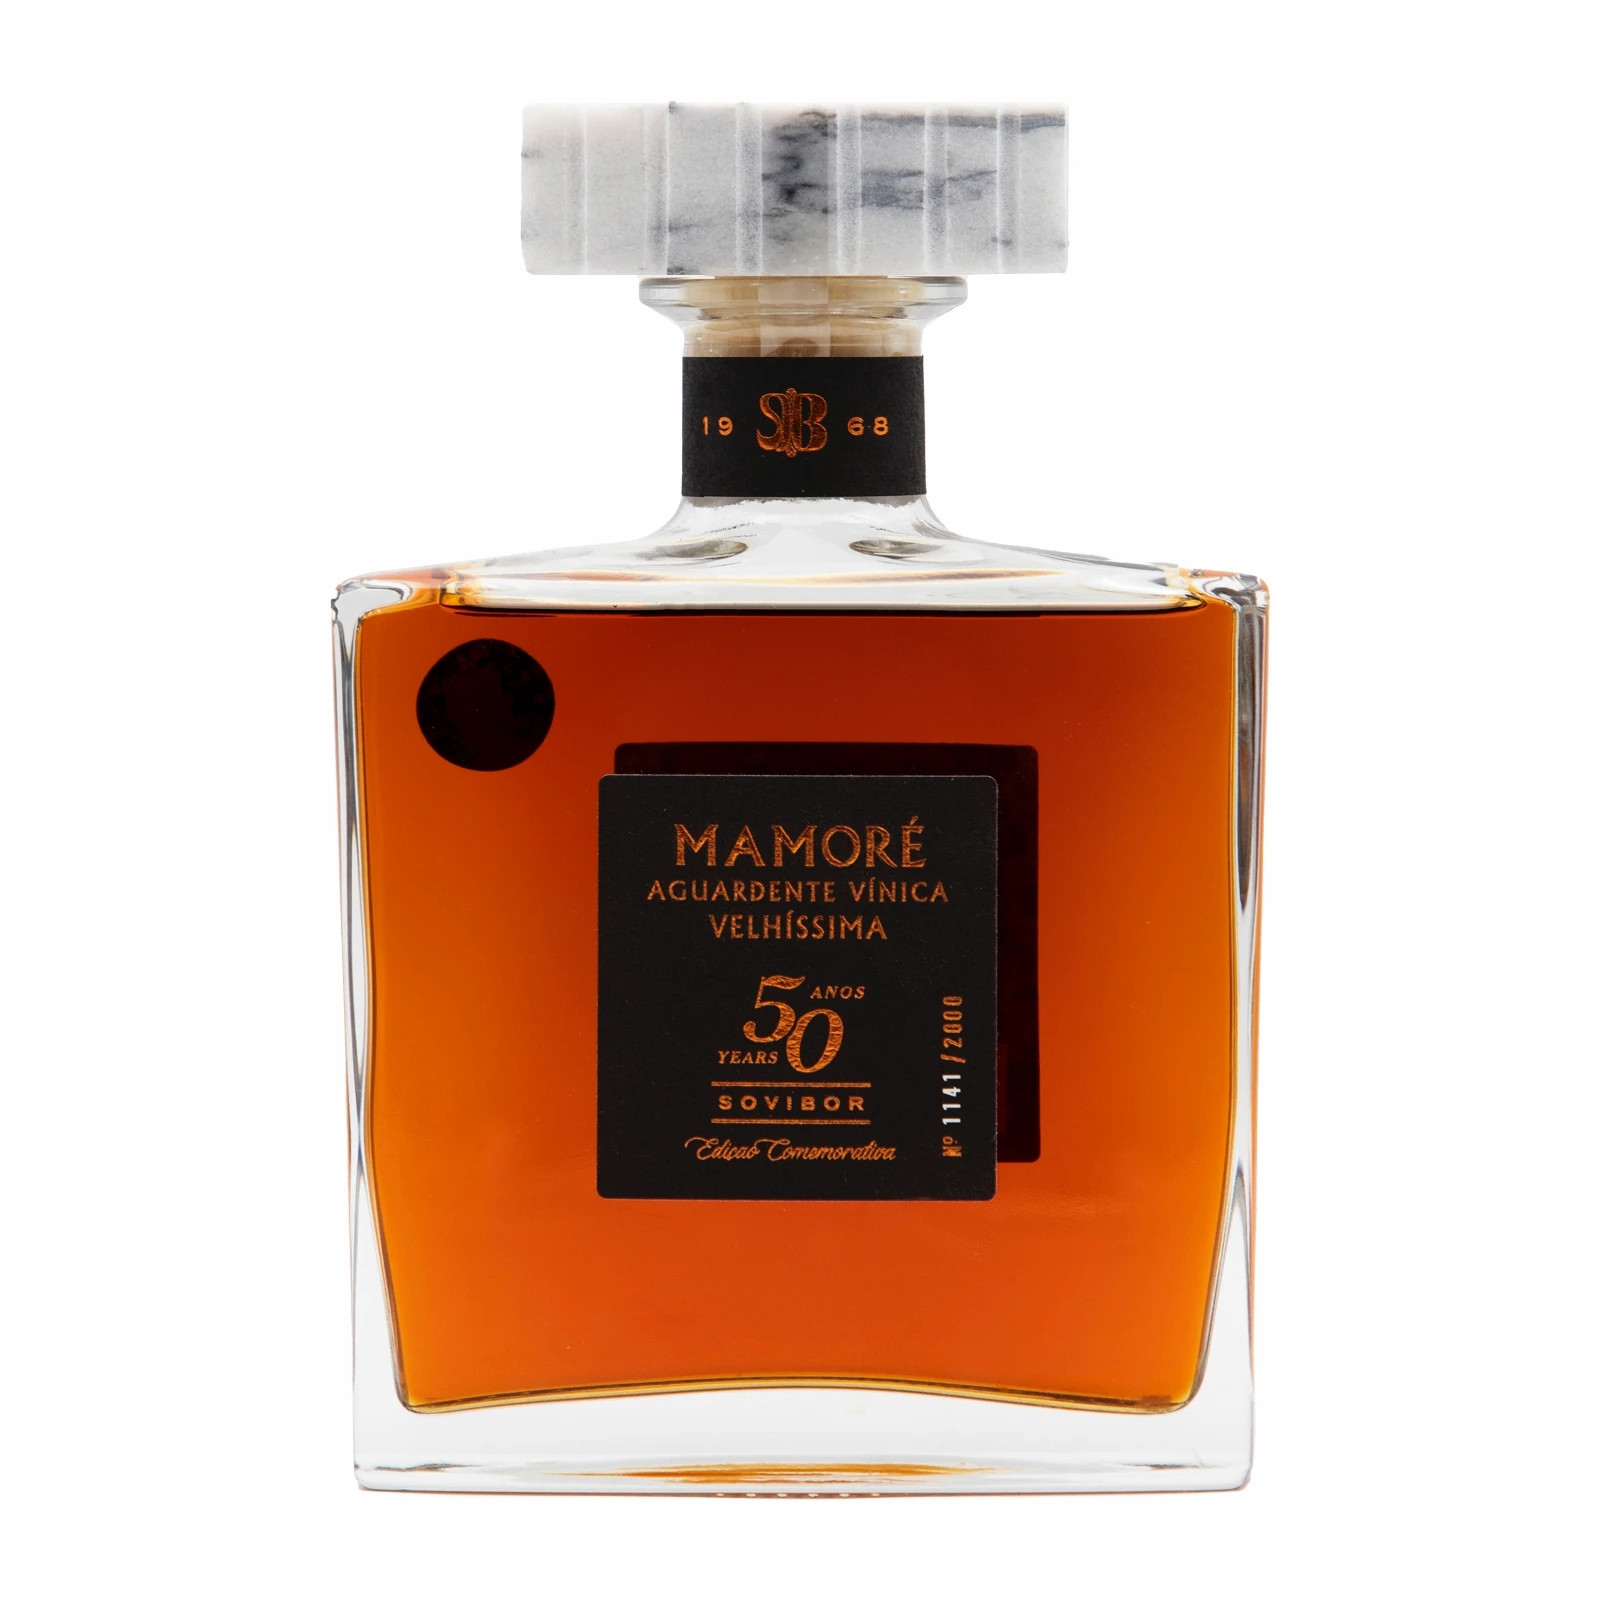 Mamoré de Borba 50 años Very Old Brandy